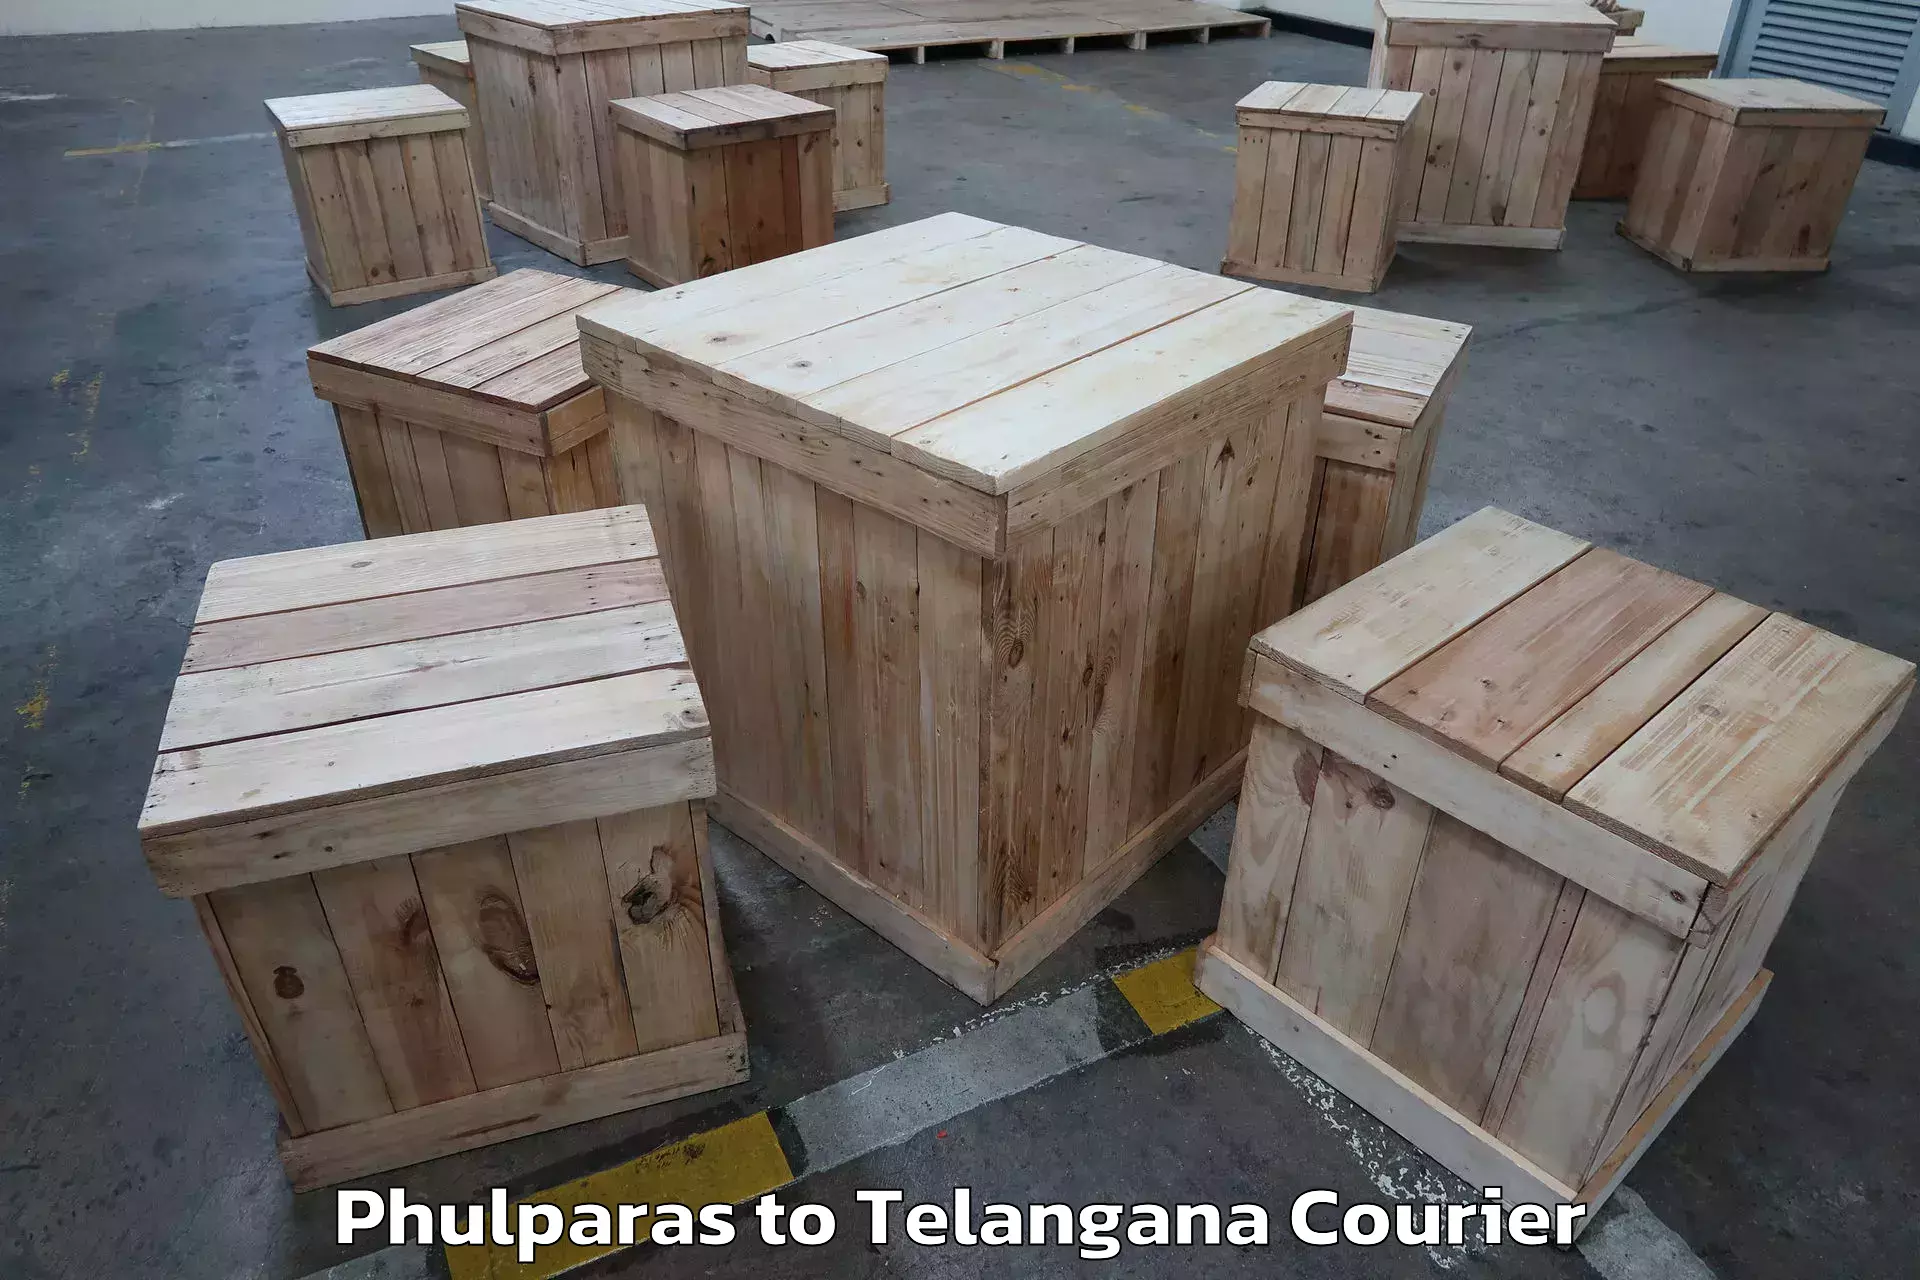 Furniture transport experts Phulparas to Telangana